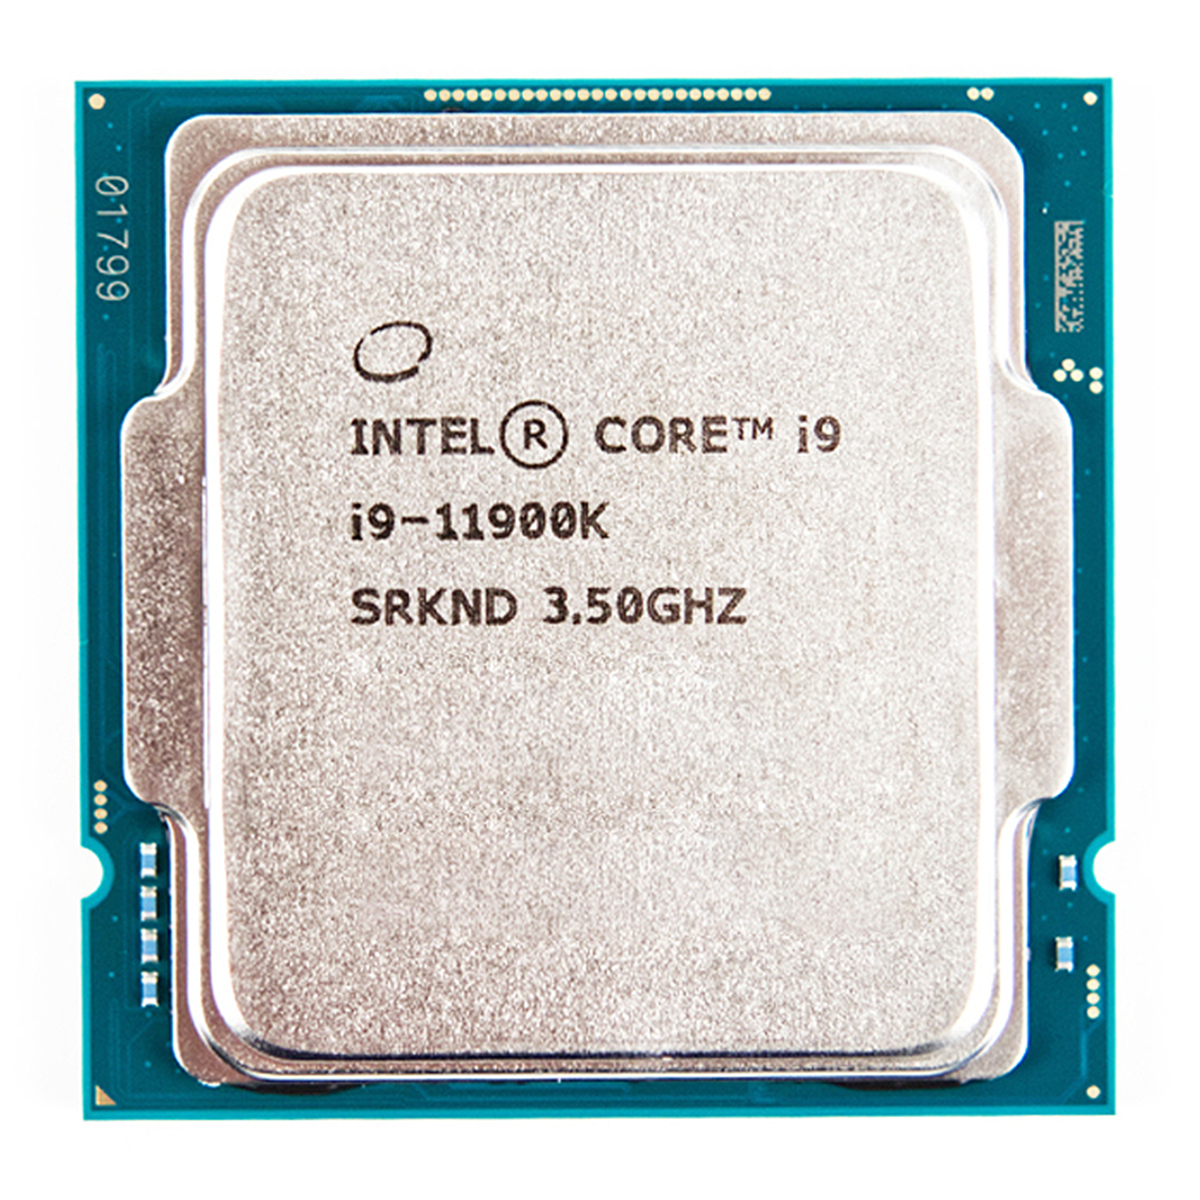 قیمت و خرید پردازنده مرکزی اینتل مدل Core i5 13600K Tray